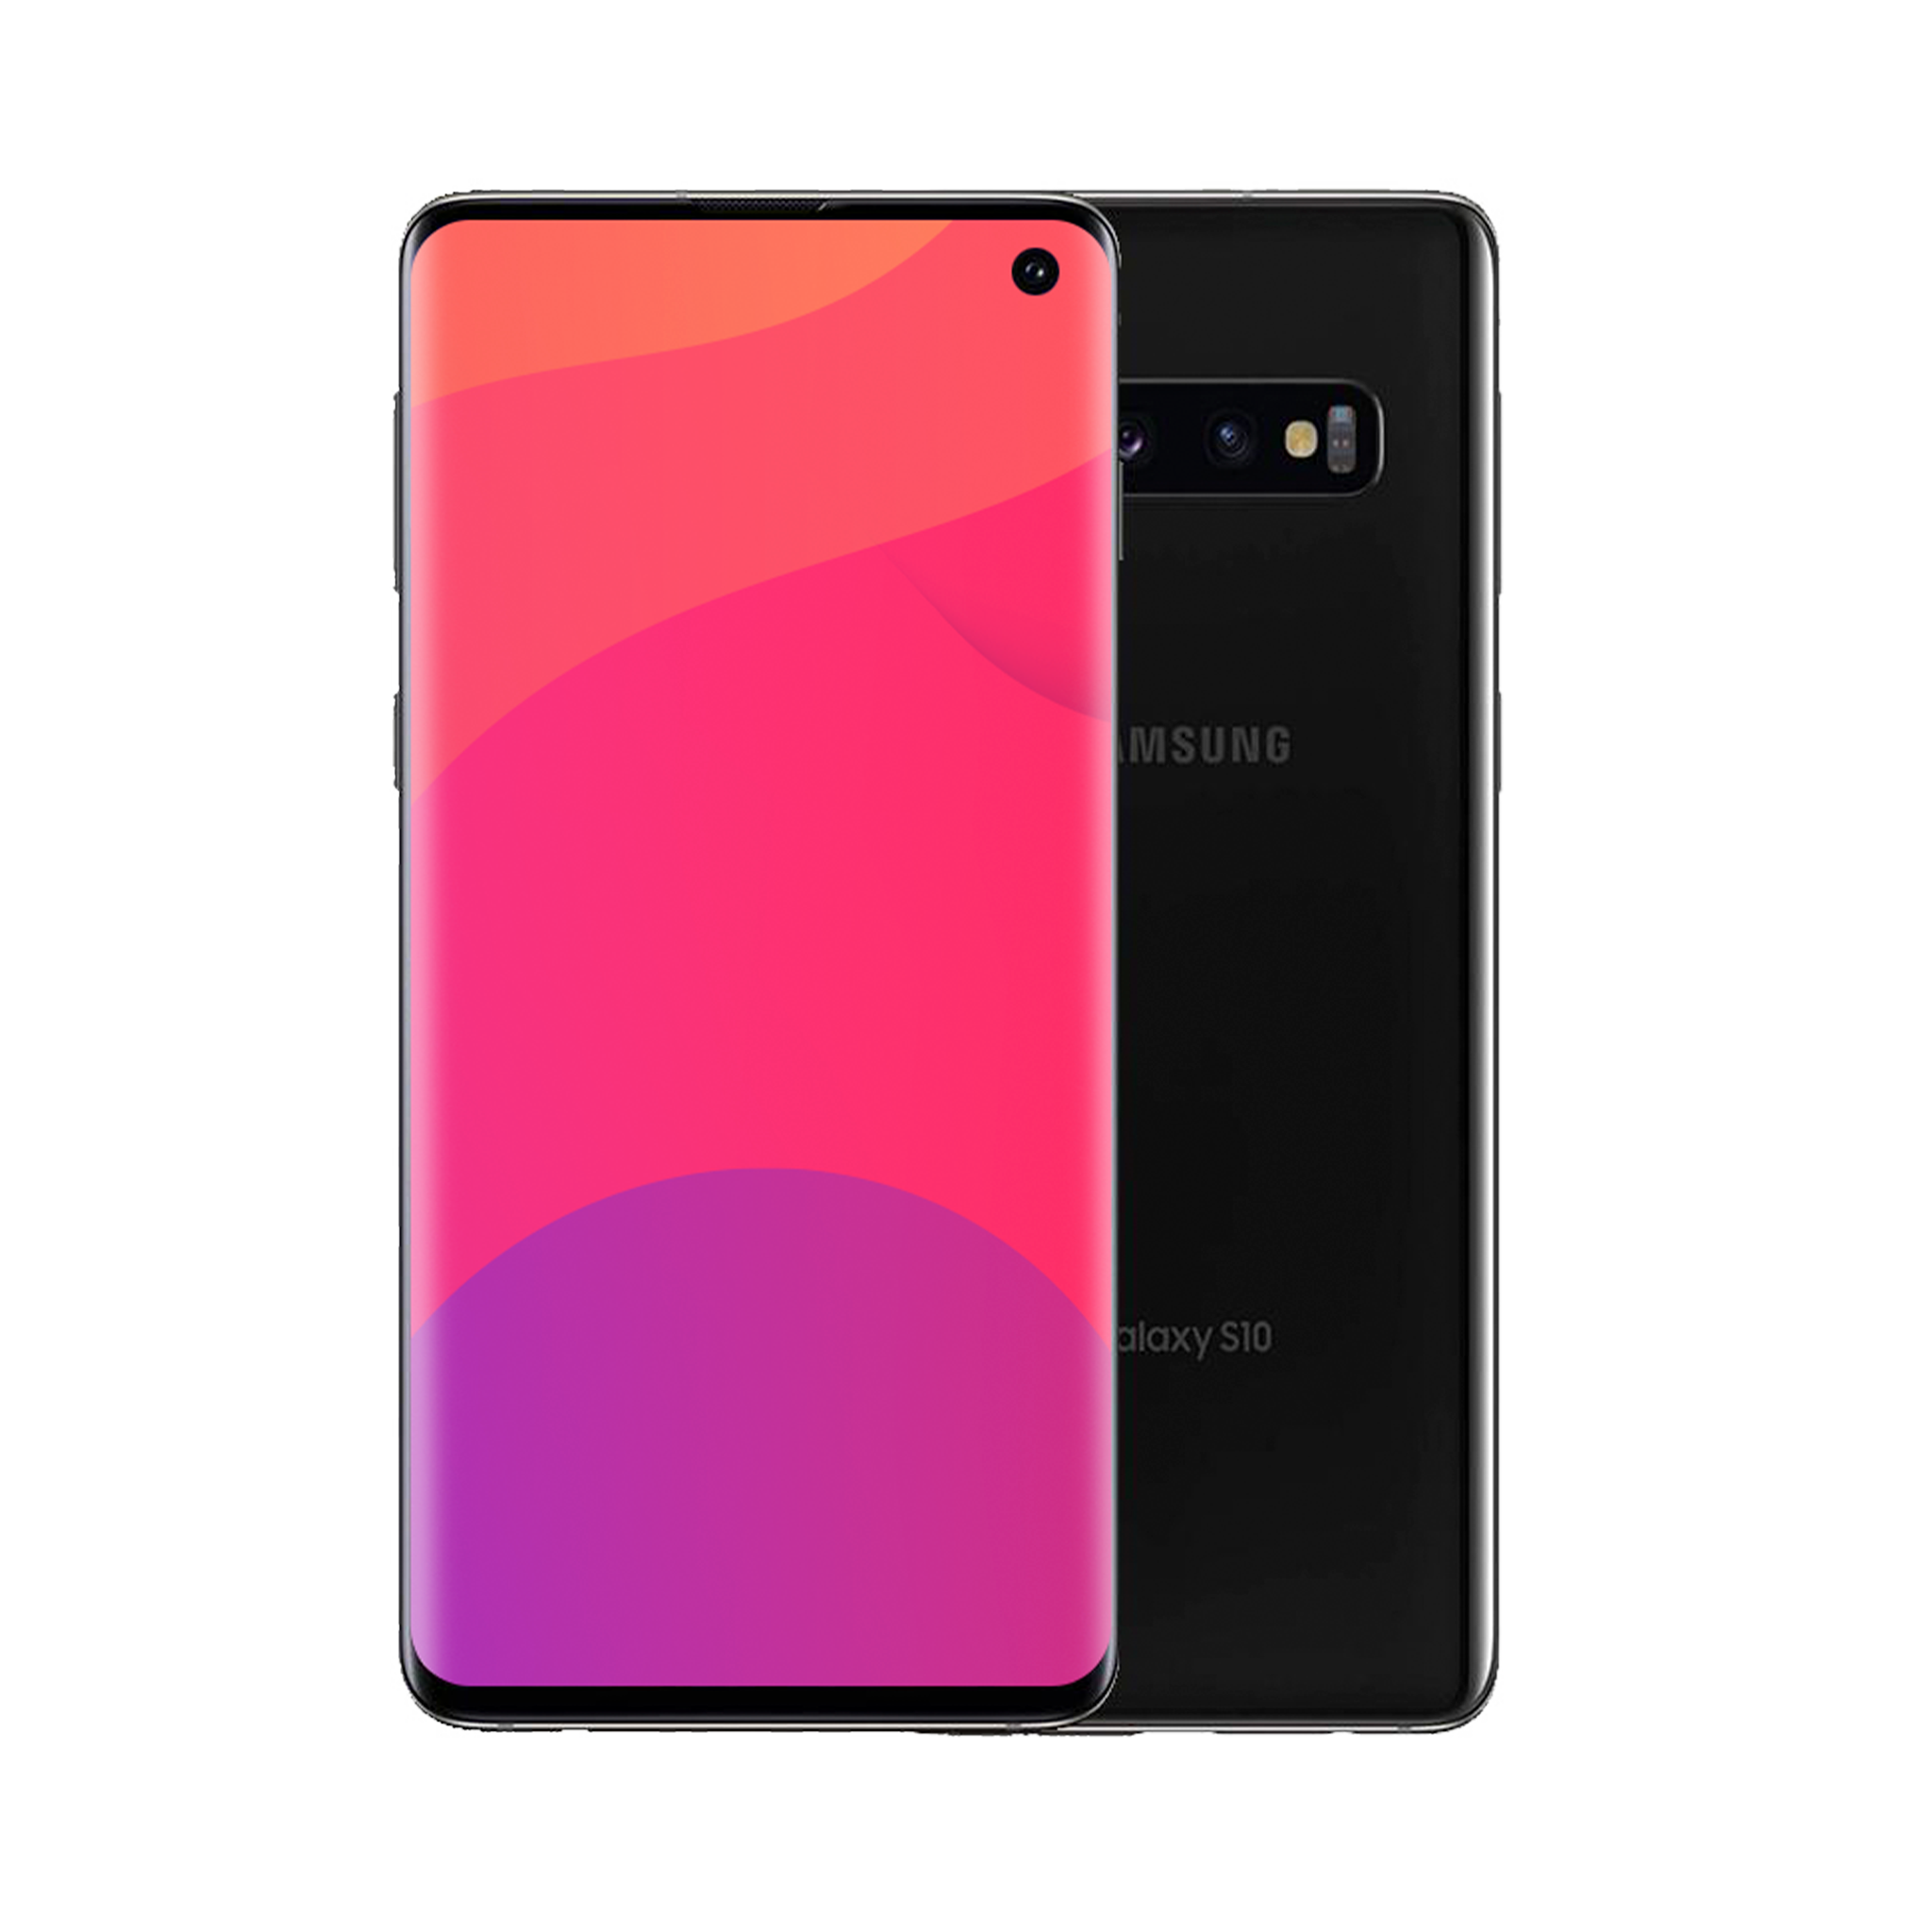 Samsung Galaxy S10 128GB Black